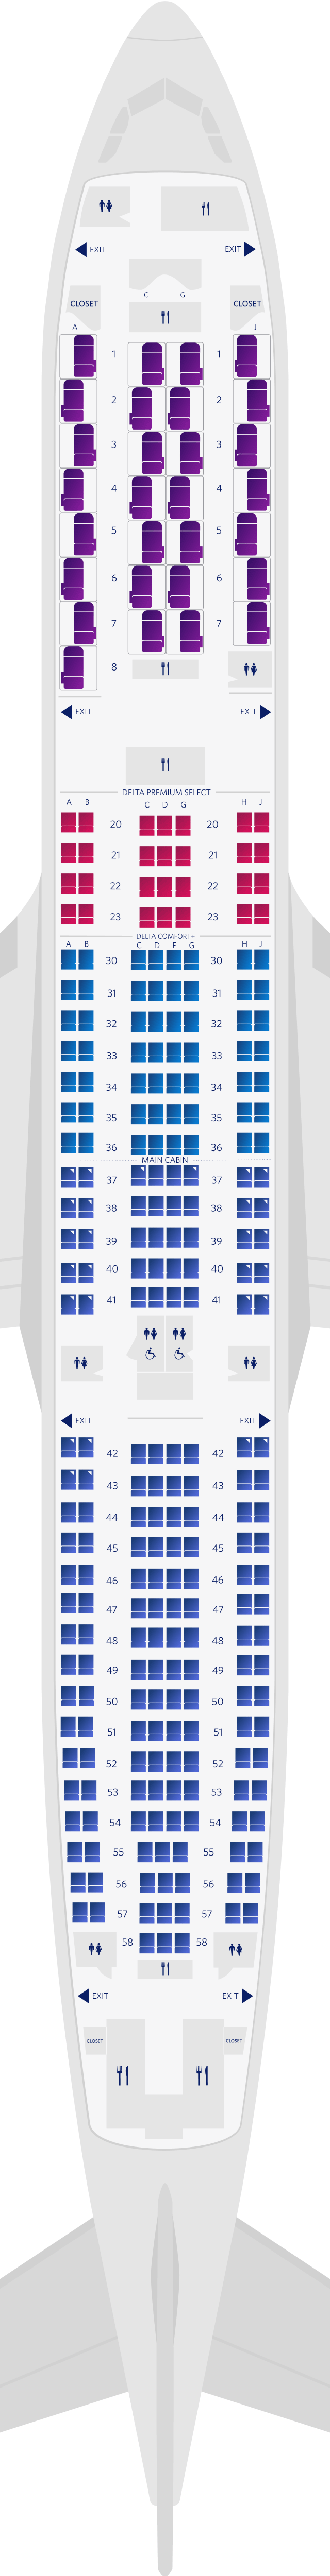 Mapa de asientos del Airbus A330-900neo